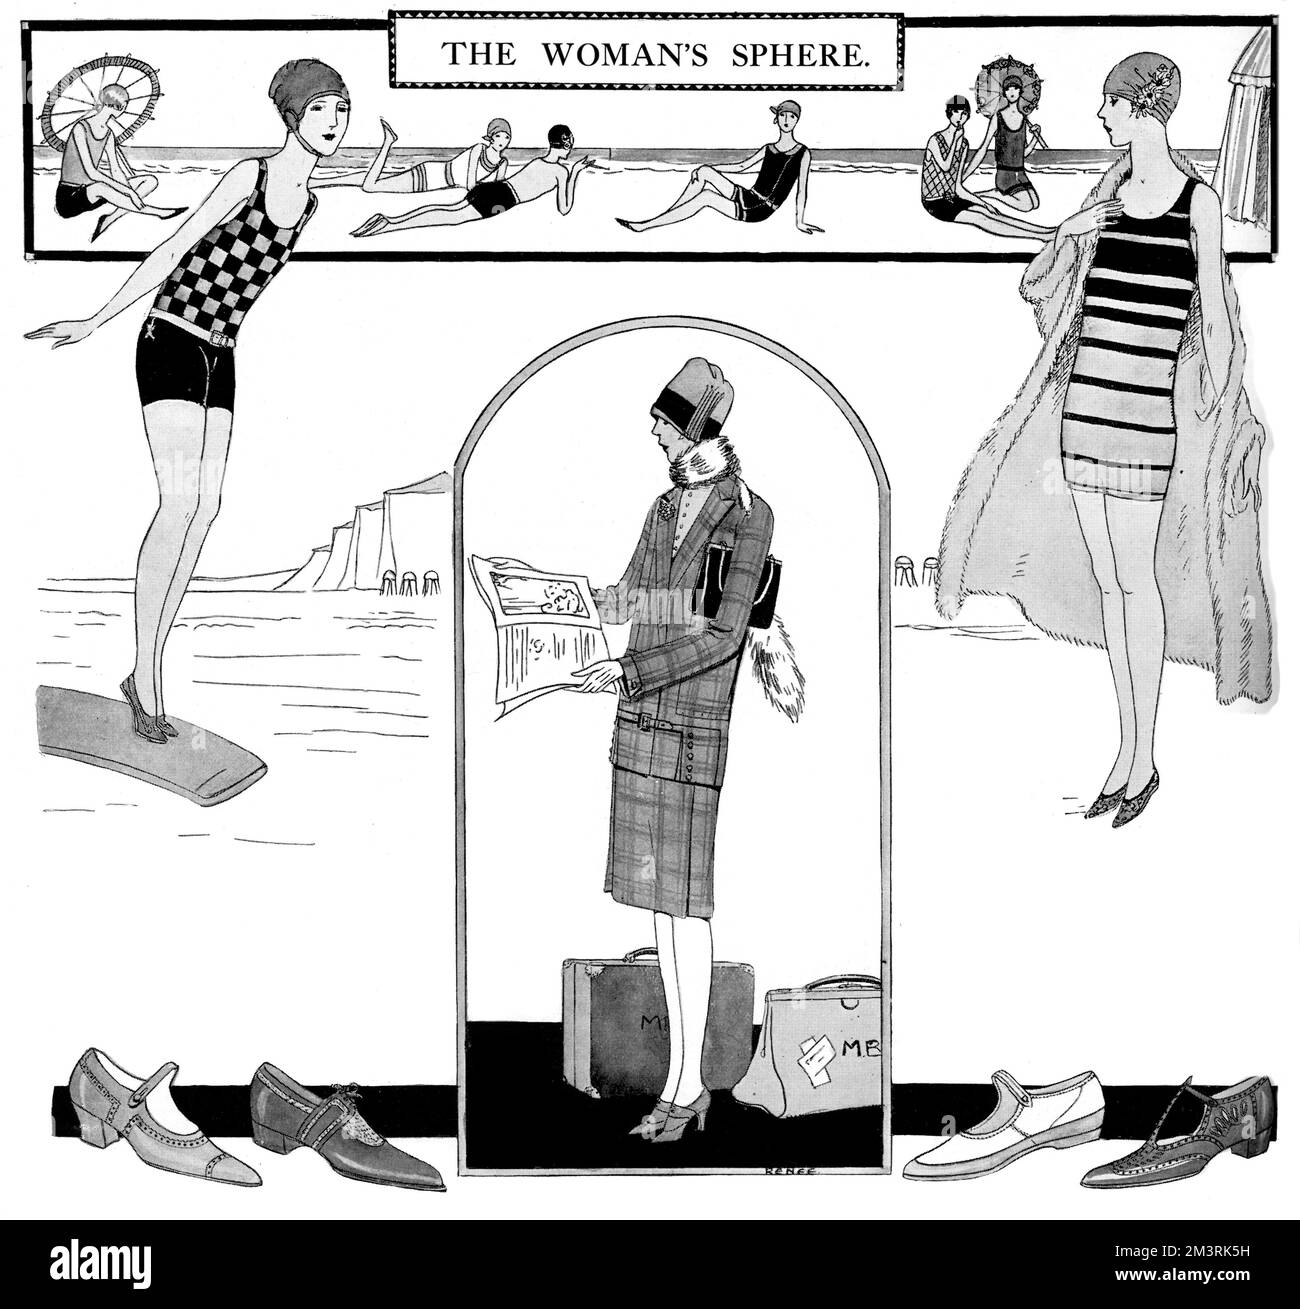 L'illustrazione di copertina della sezione femminile di The Sphere presenta una serie di abiti alla moda. La donna di destra pratica un costume da bagno americano a strisce di vespa, mentre la donna di sinistra è di lana canadiana controllata - entrambe da Lily-white di Piccadilly. La donna in basso, invece, indossa un abito tweed sartoriale progettato da Kenneth Durward. 1927 Foto Stock